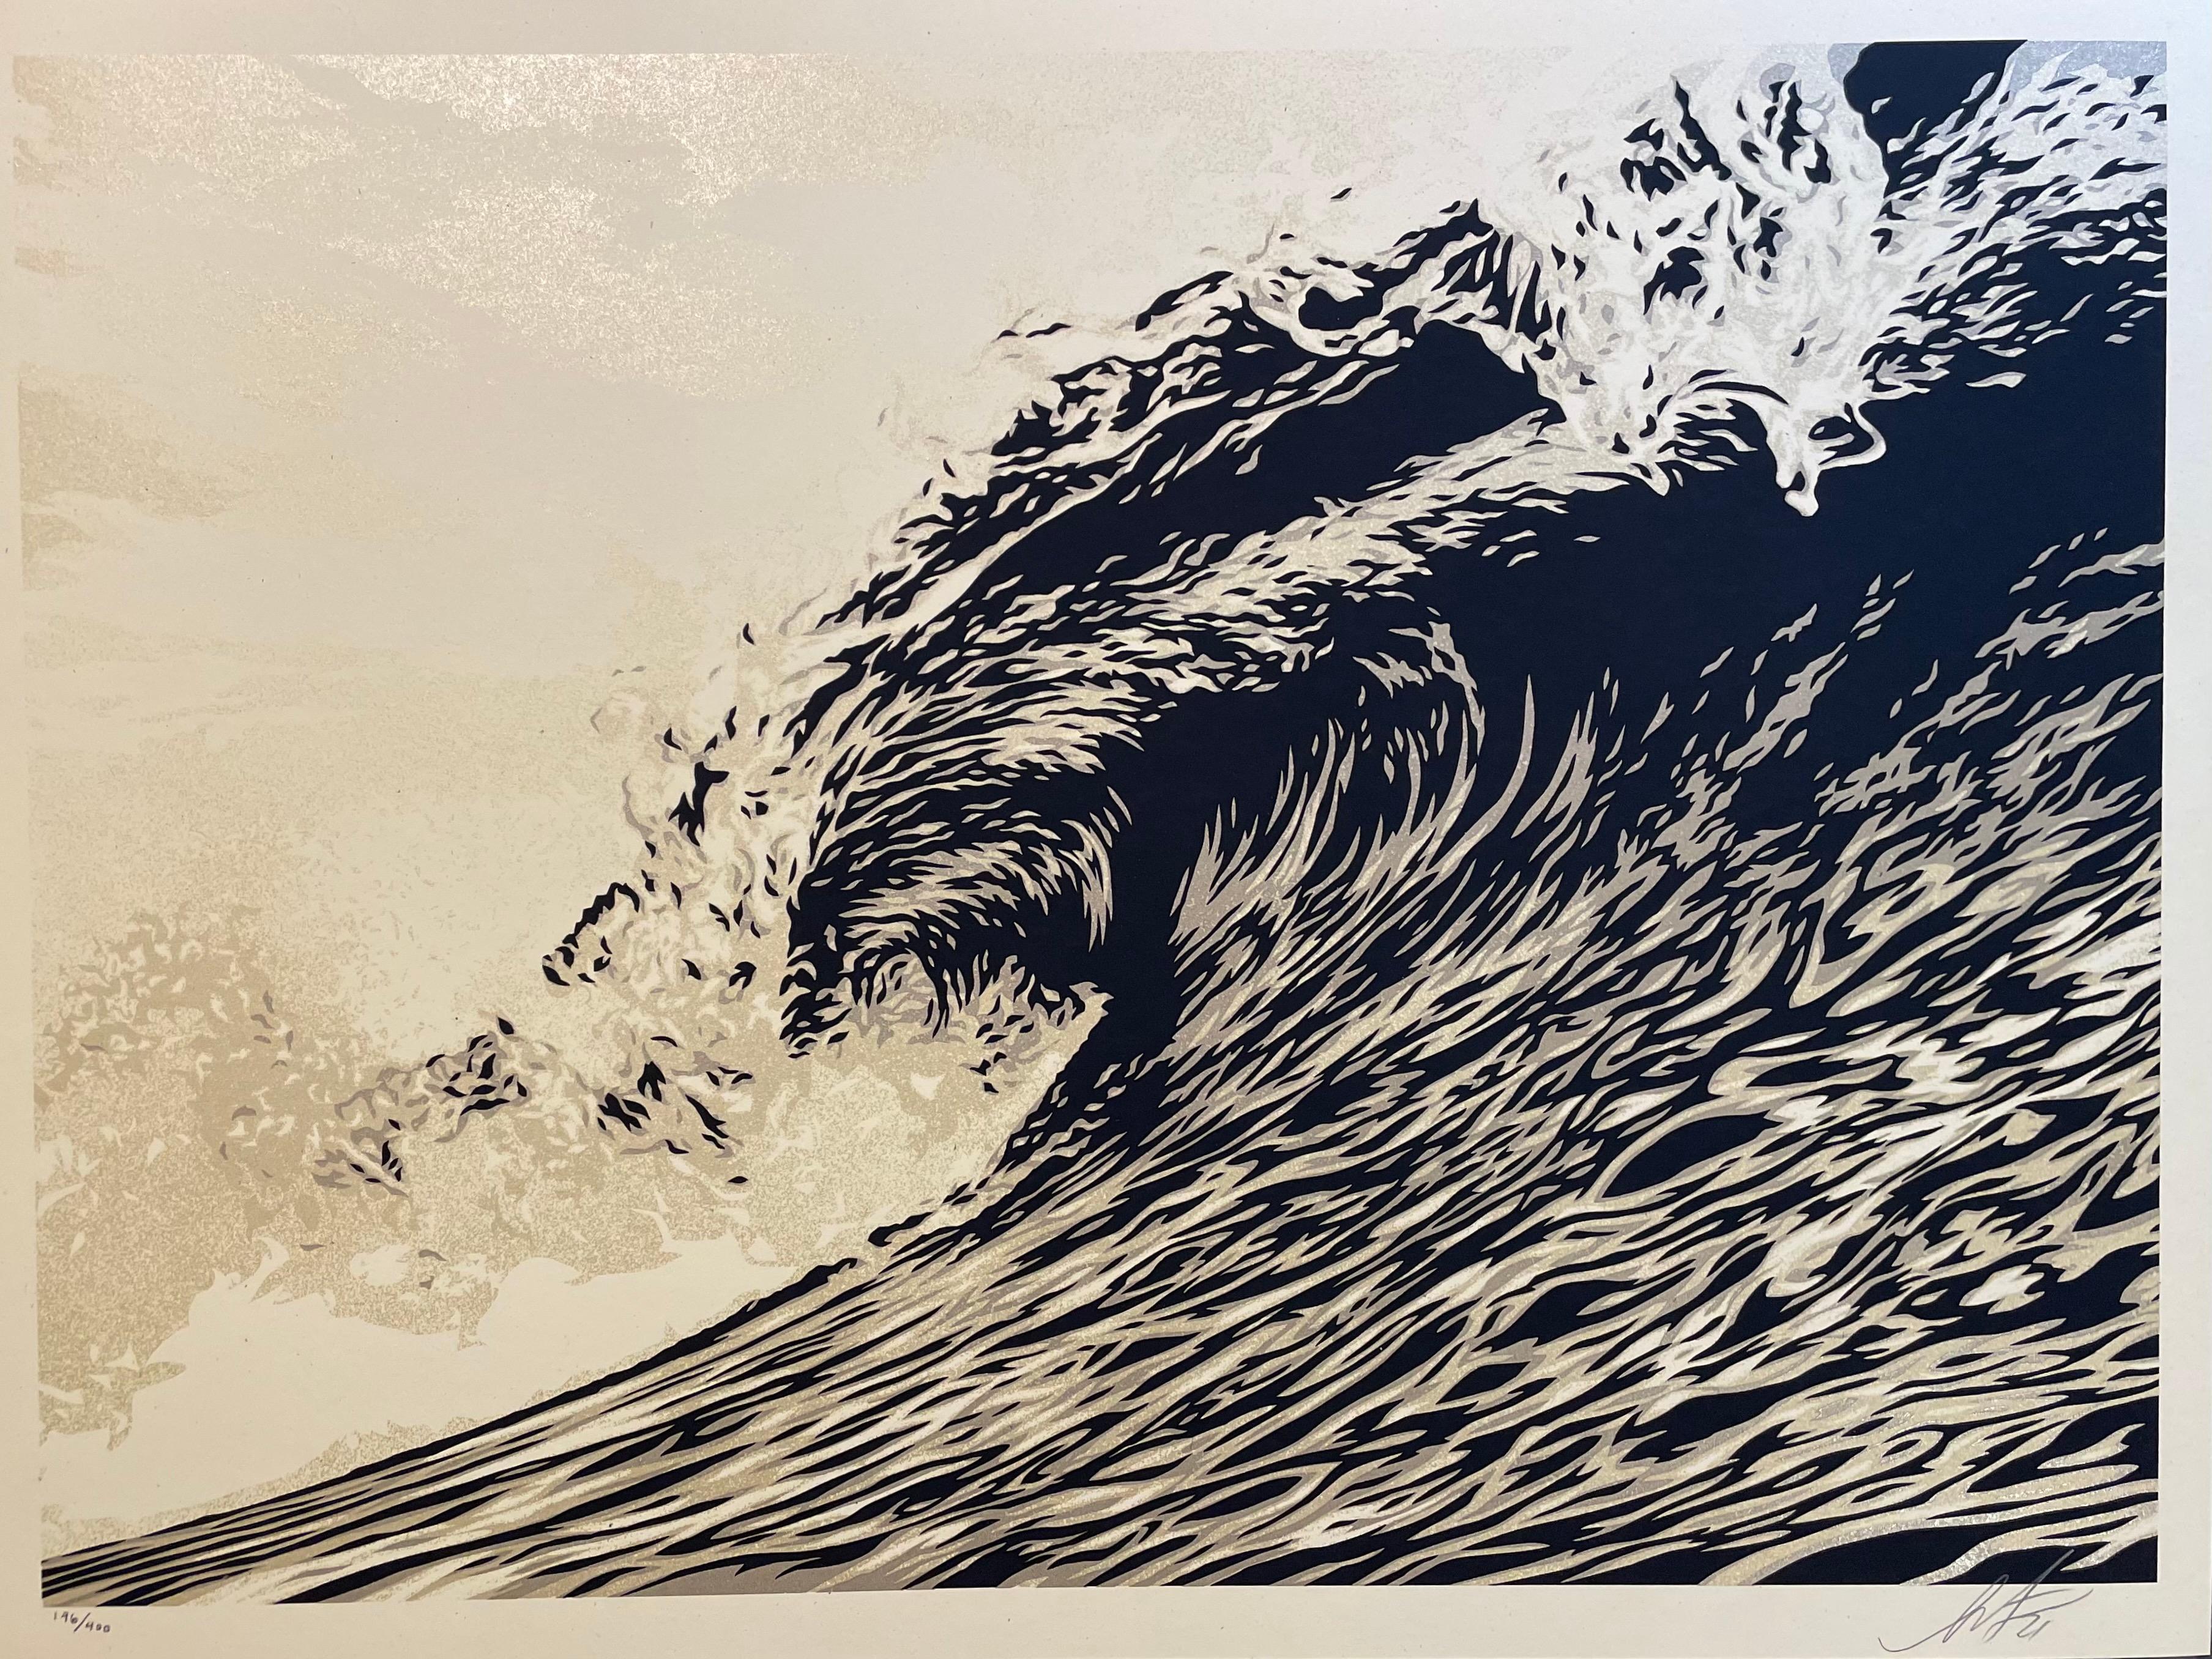 Welle von Distress Shepard Fairey Druck Obey Giant Weltwassertag Sephia Gold Pop